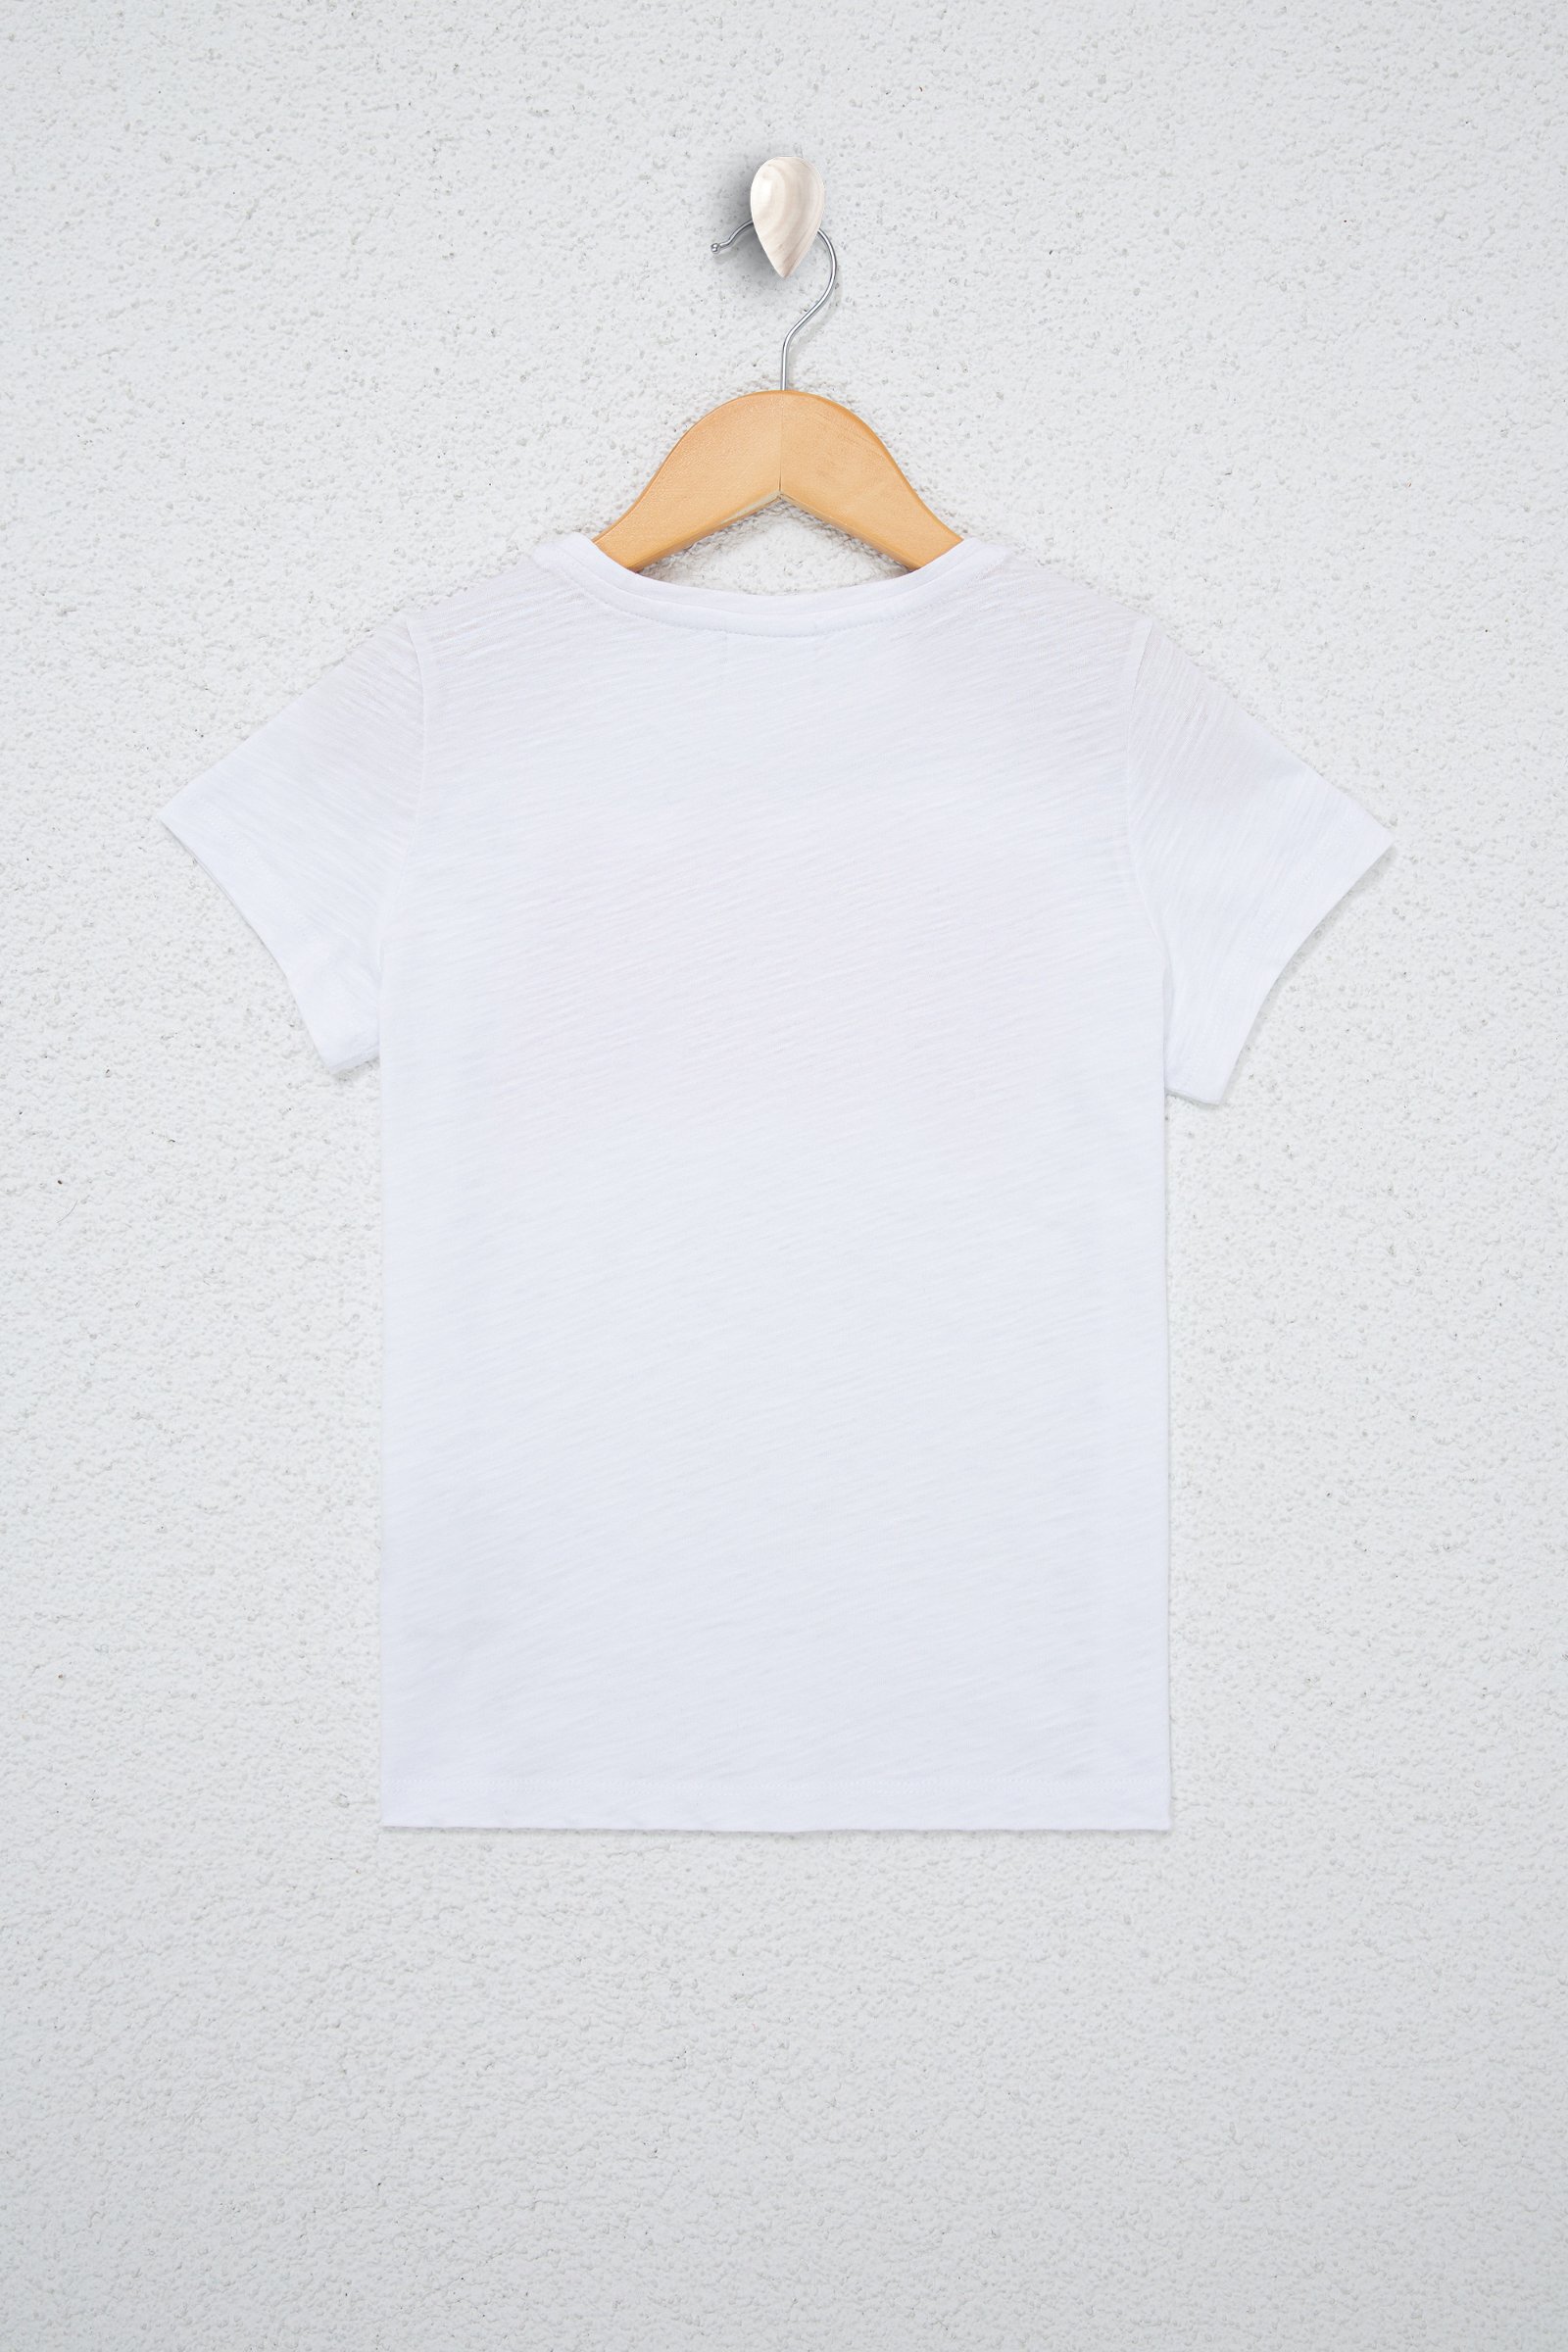 تی شرت  سفید  استاندارد فیت  دخترانه یو اس پولو | US POLO ASSN